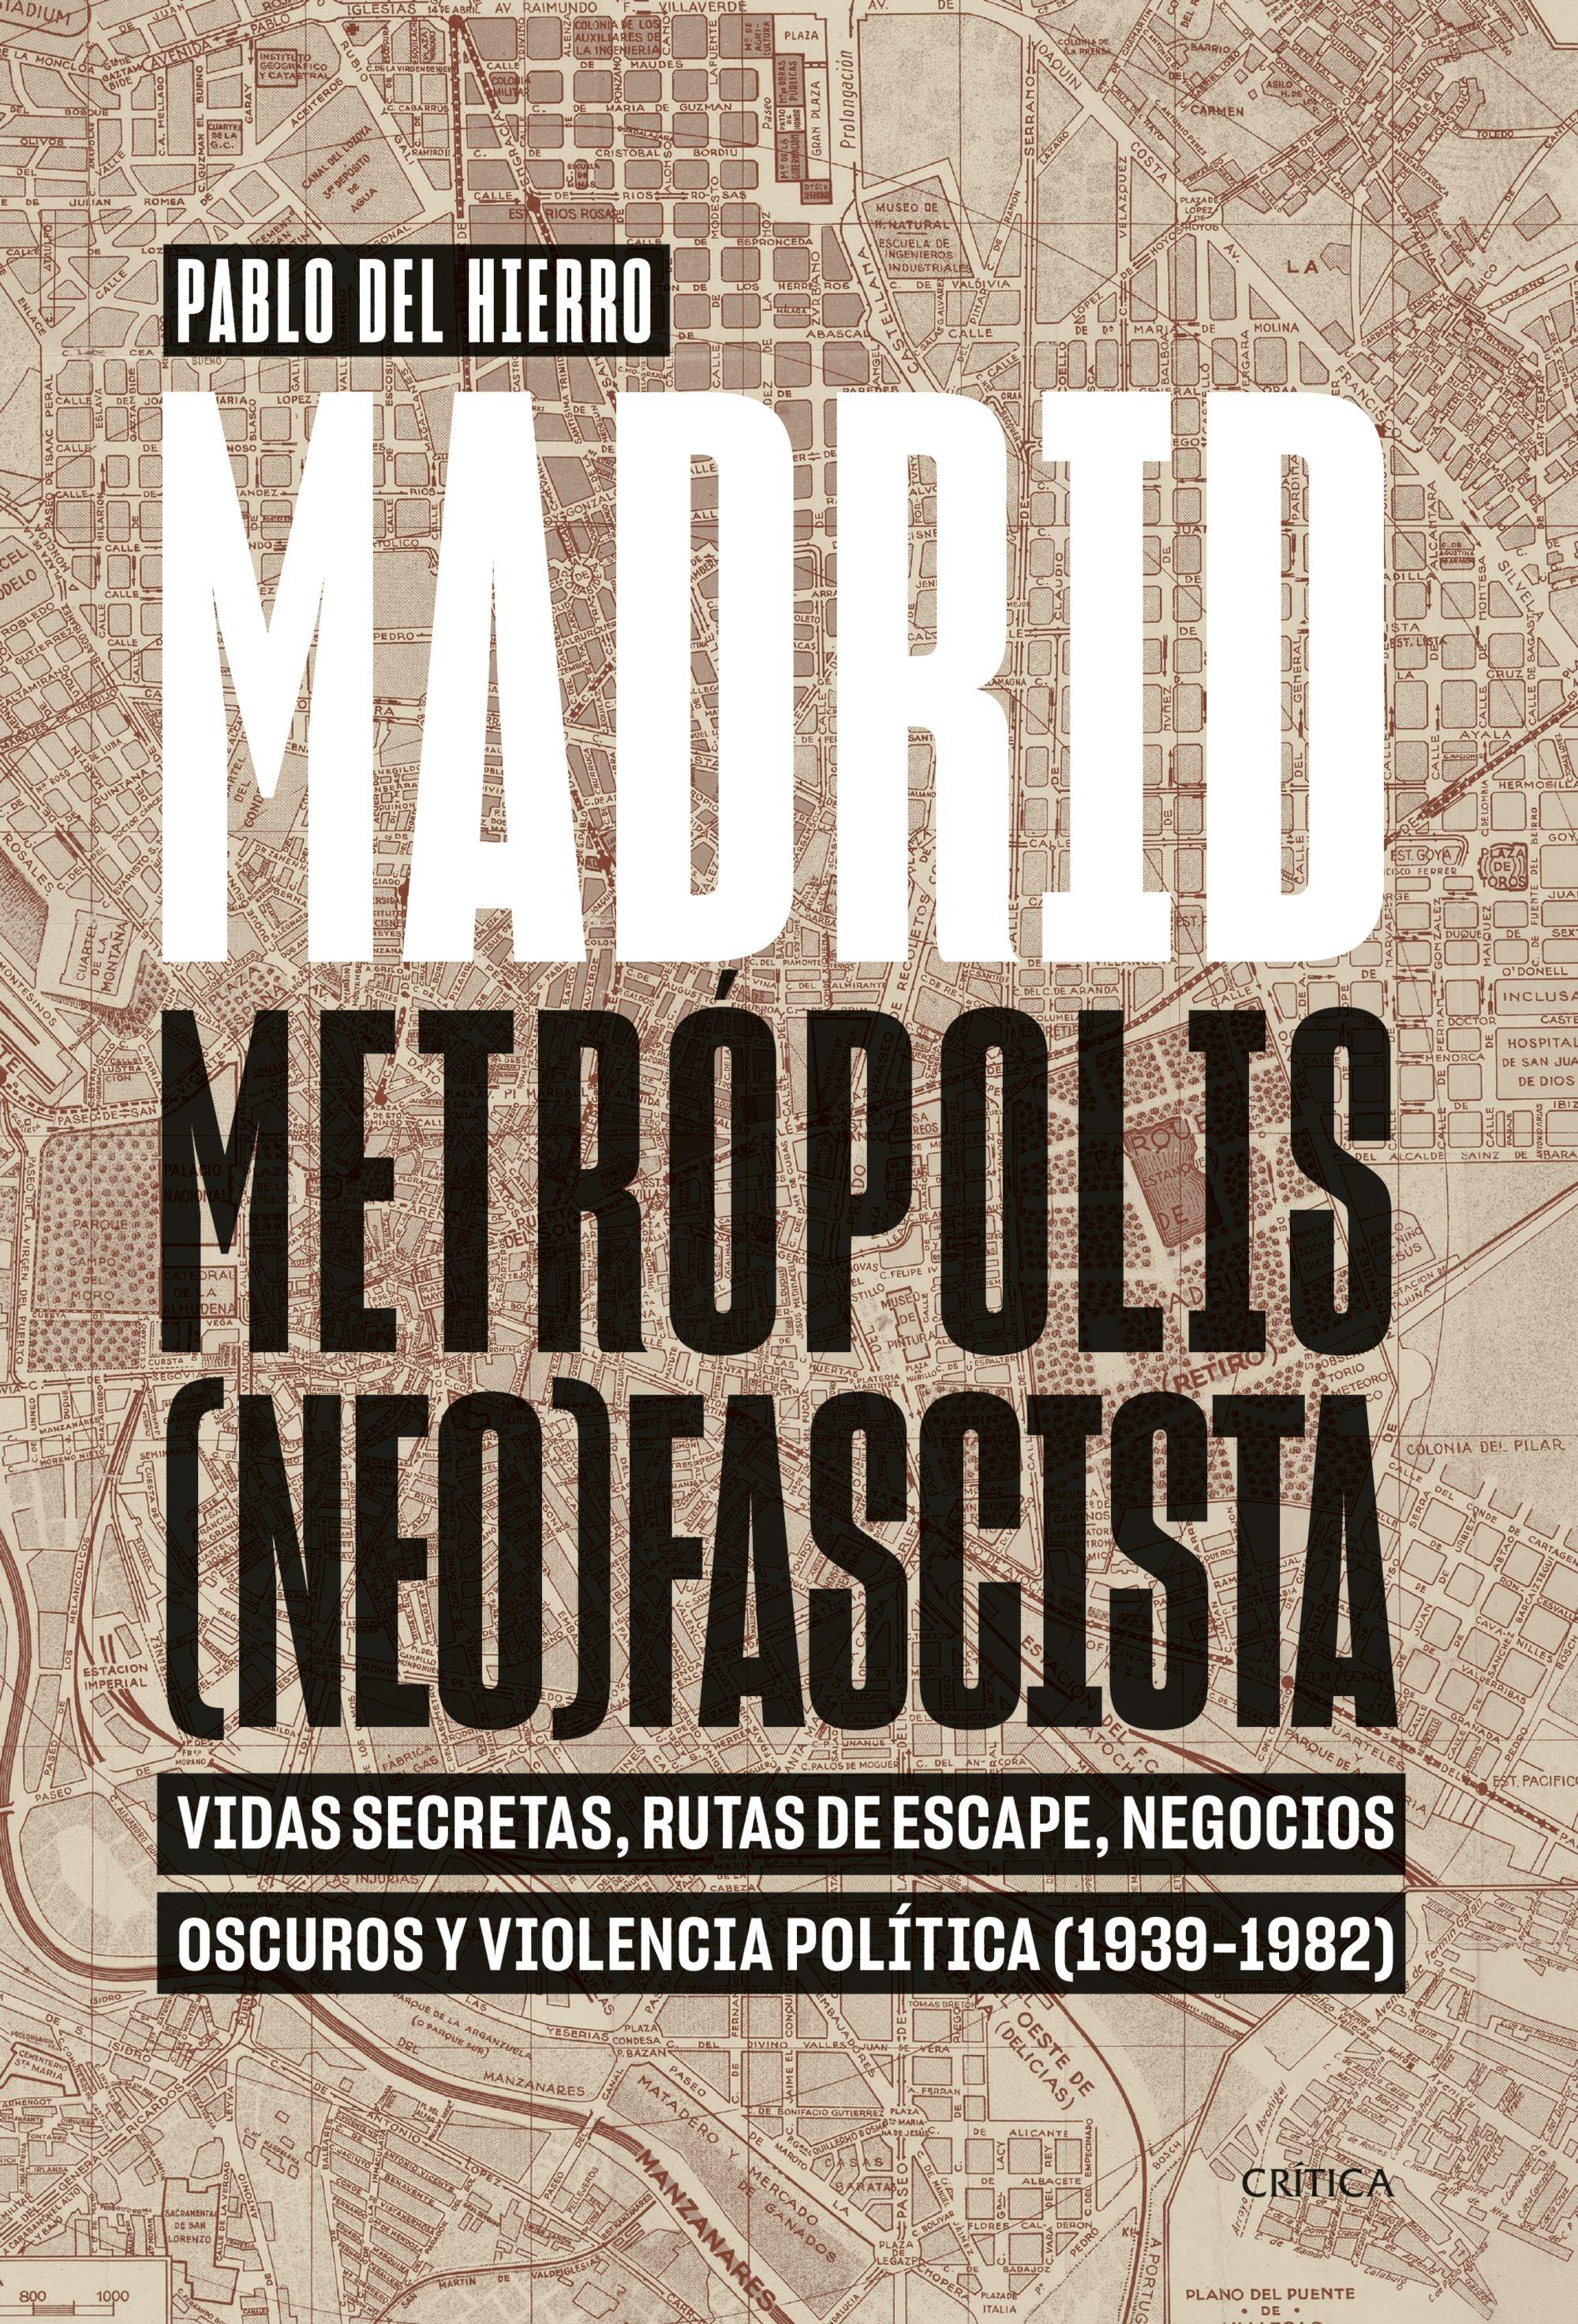 Madrid, Metrópolis (Neo)Fascista "Vidas Secretas, Rutas de Escape, Negocios Oscuros y Violencia Política ("